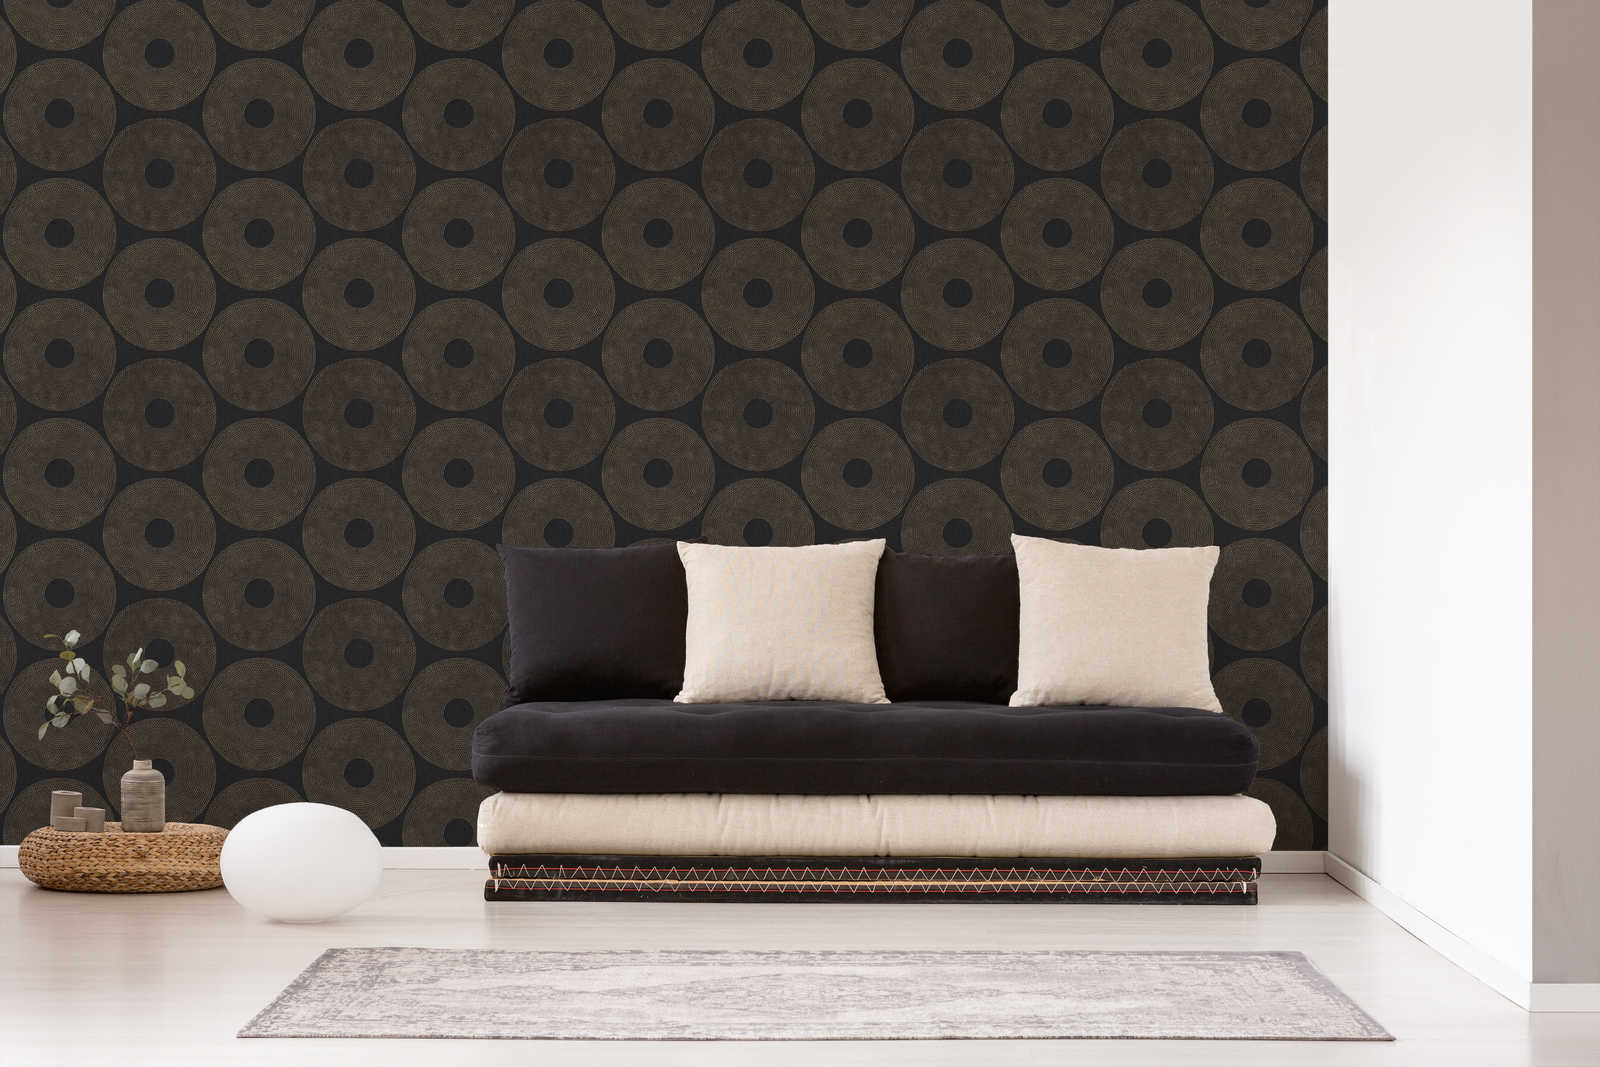             Ethno behang cirkels met structuurdesign - grijs, bruin
        